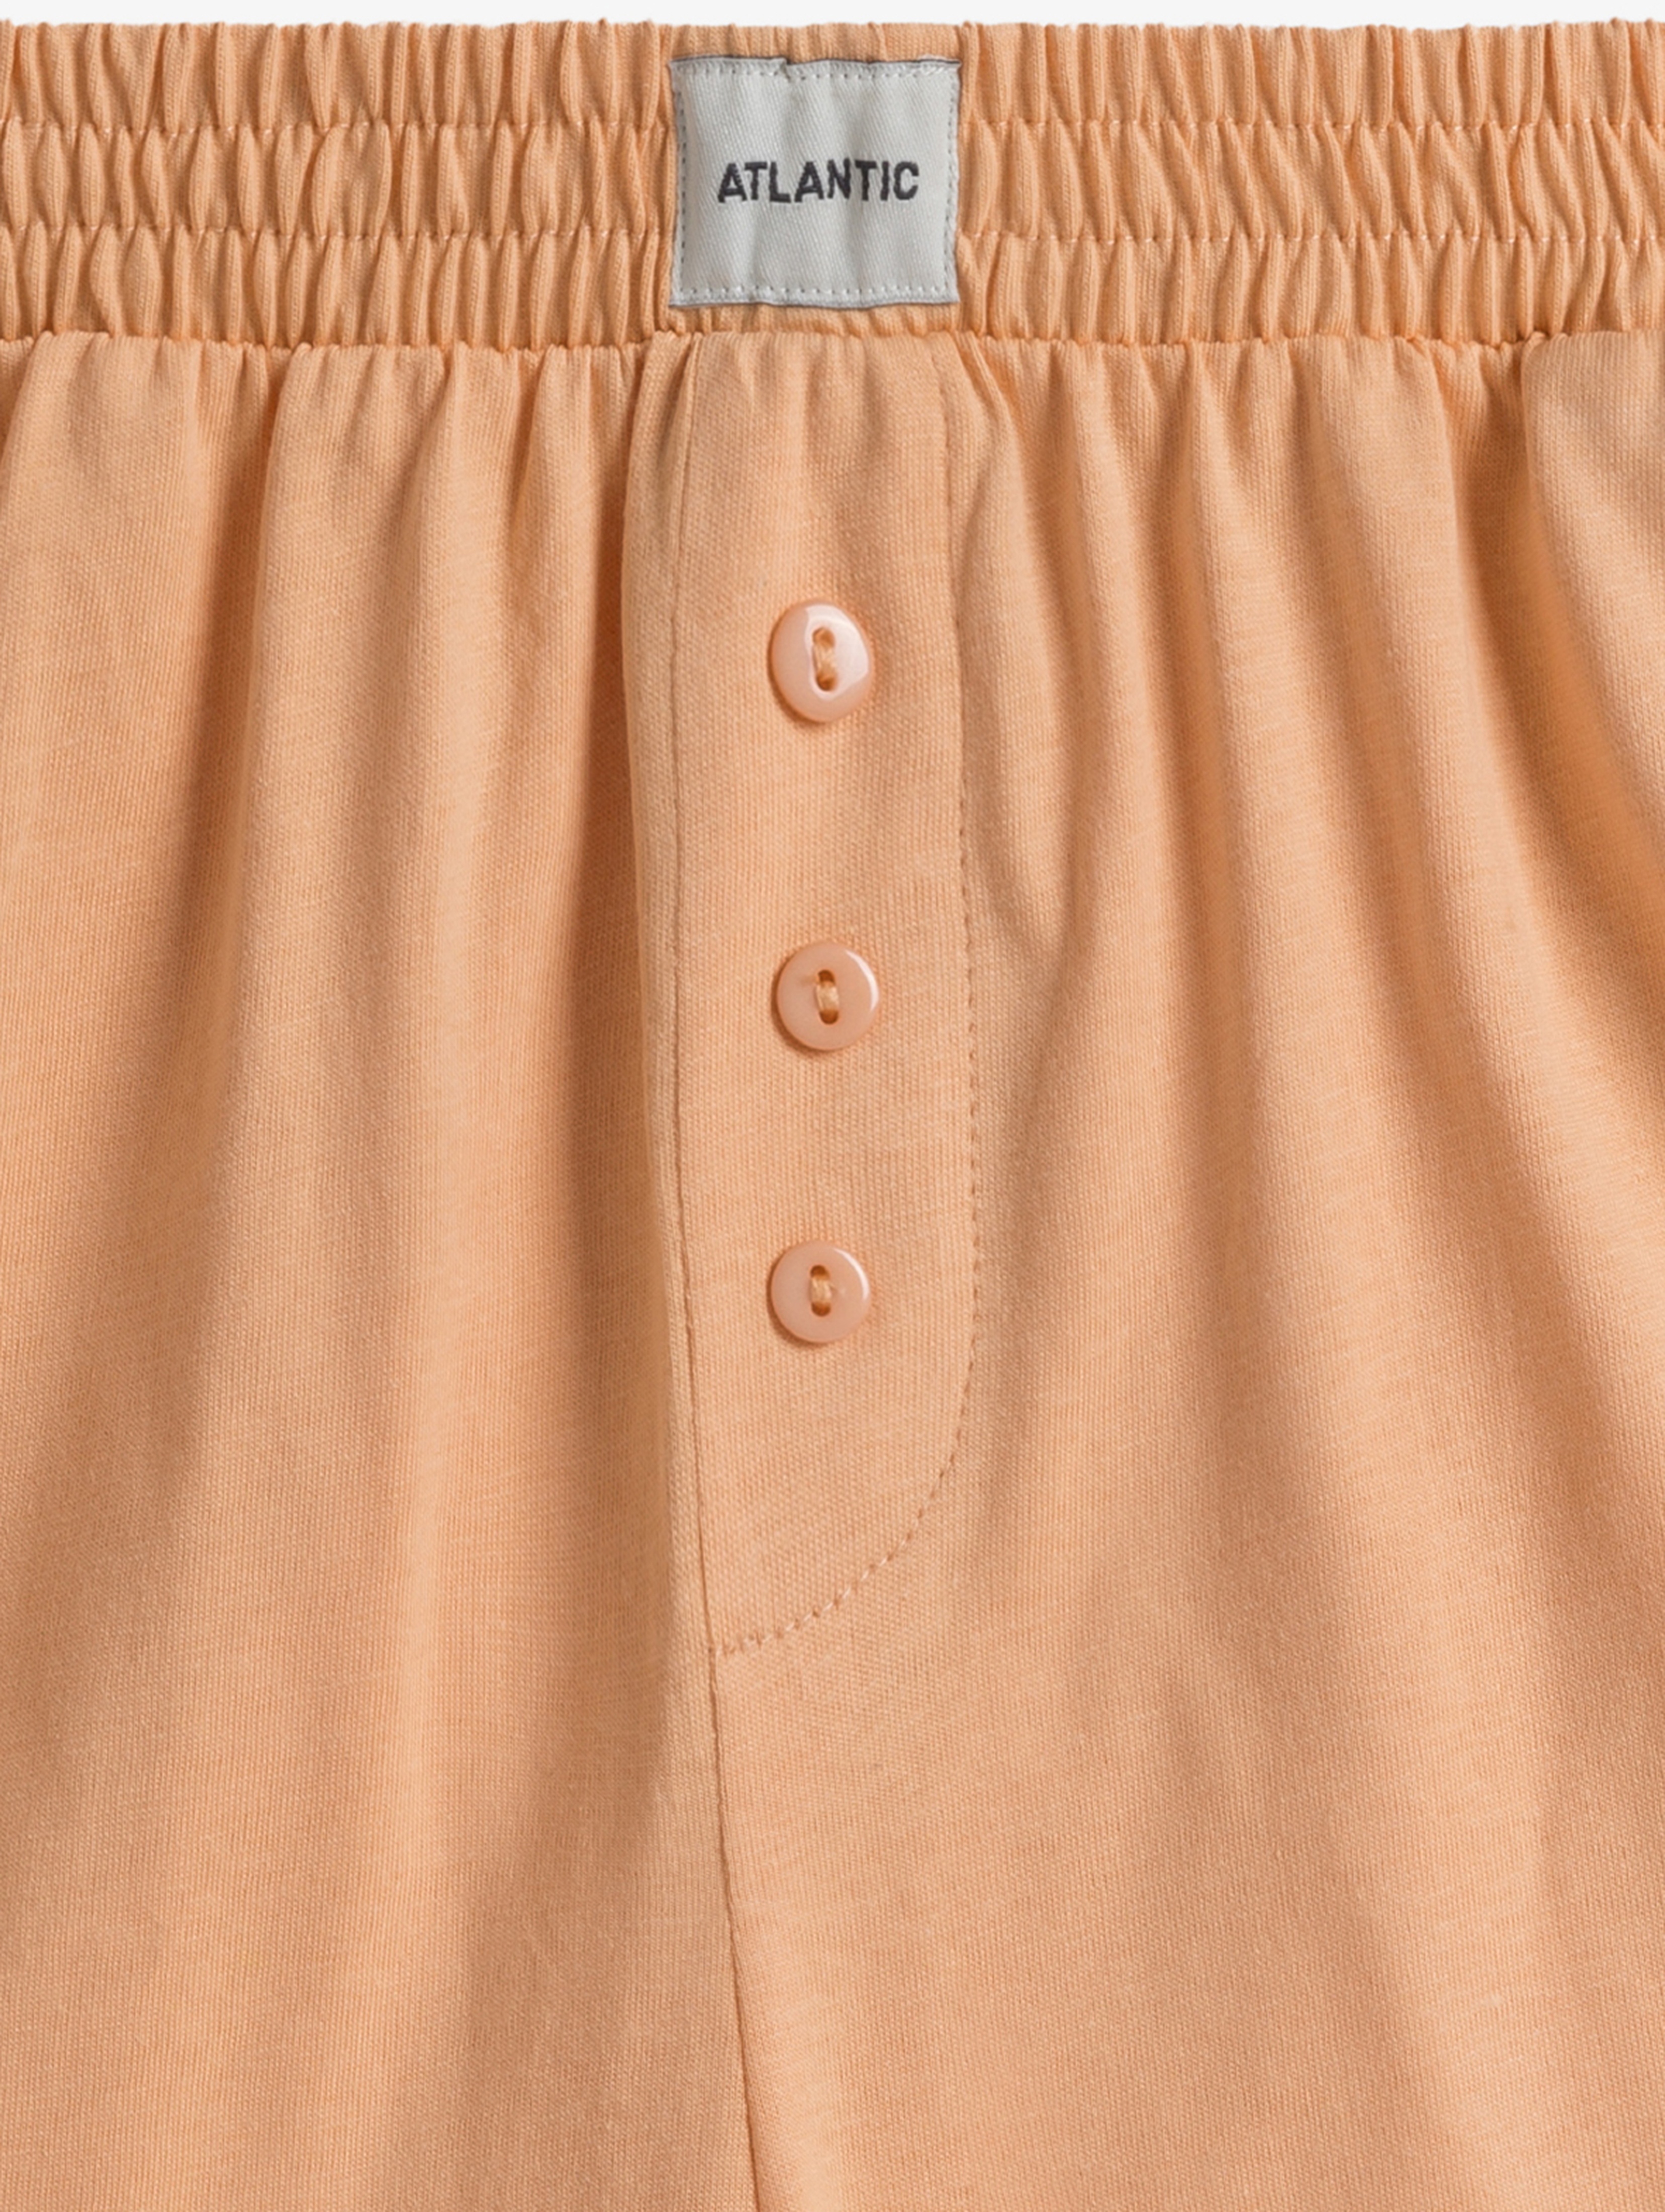 Piżama damska z krótkim rękawem - bawełniana - brzoskwiniowa - Atlantic